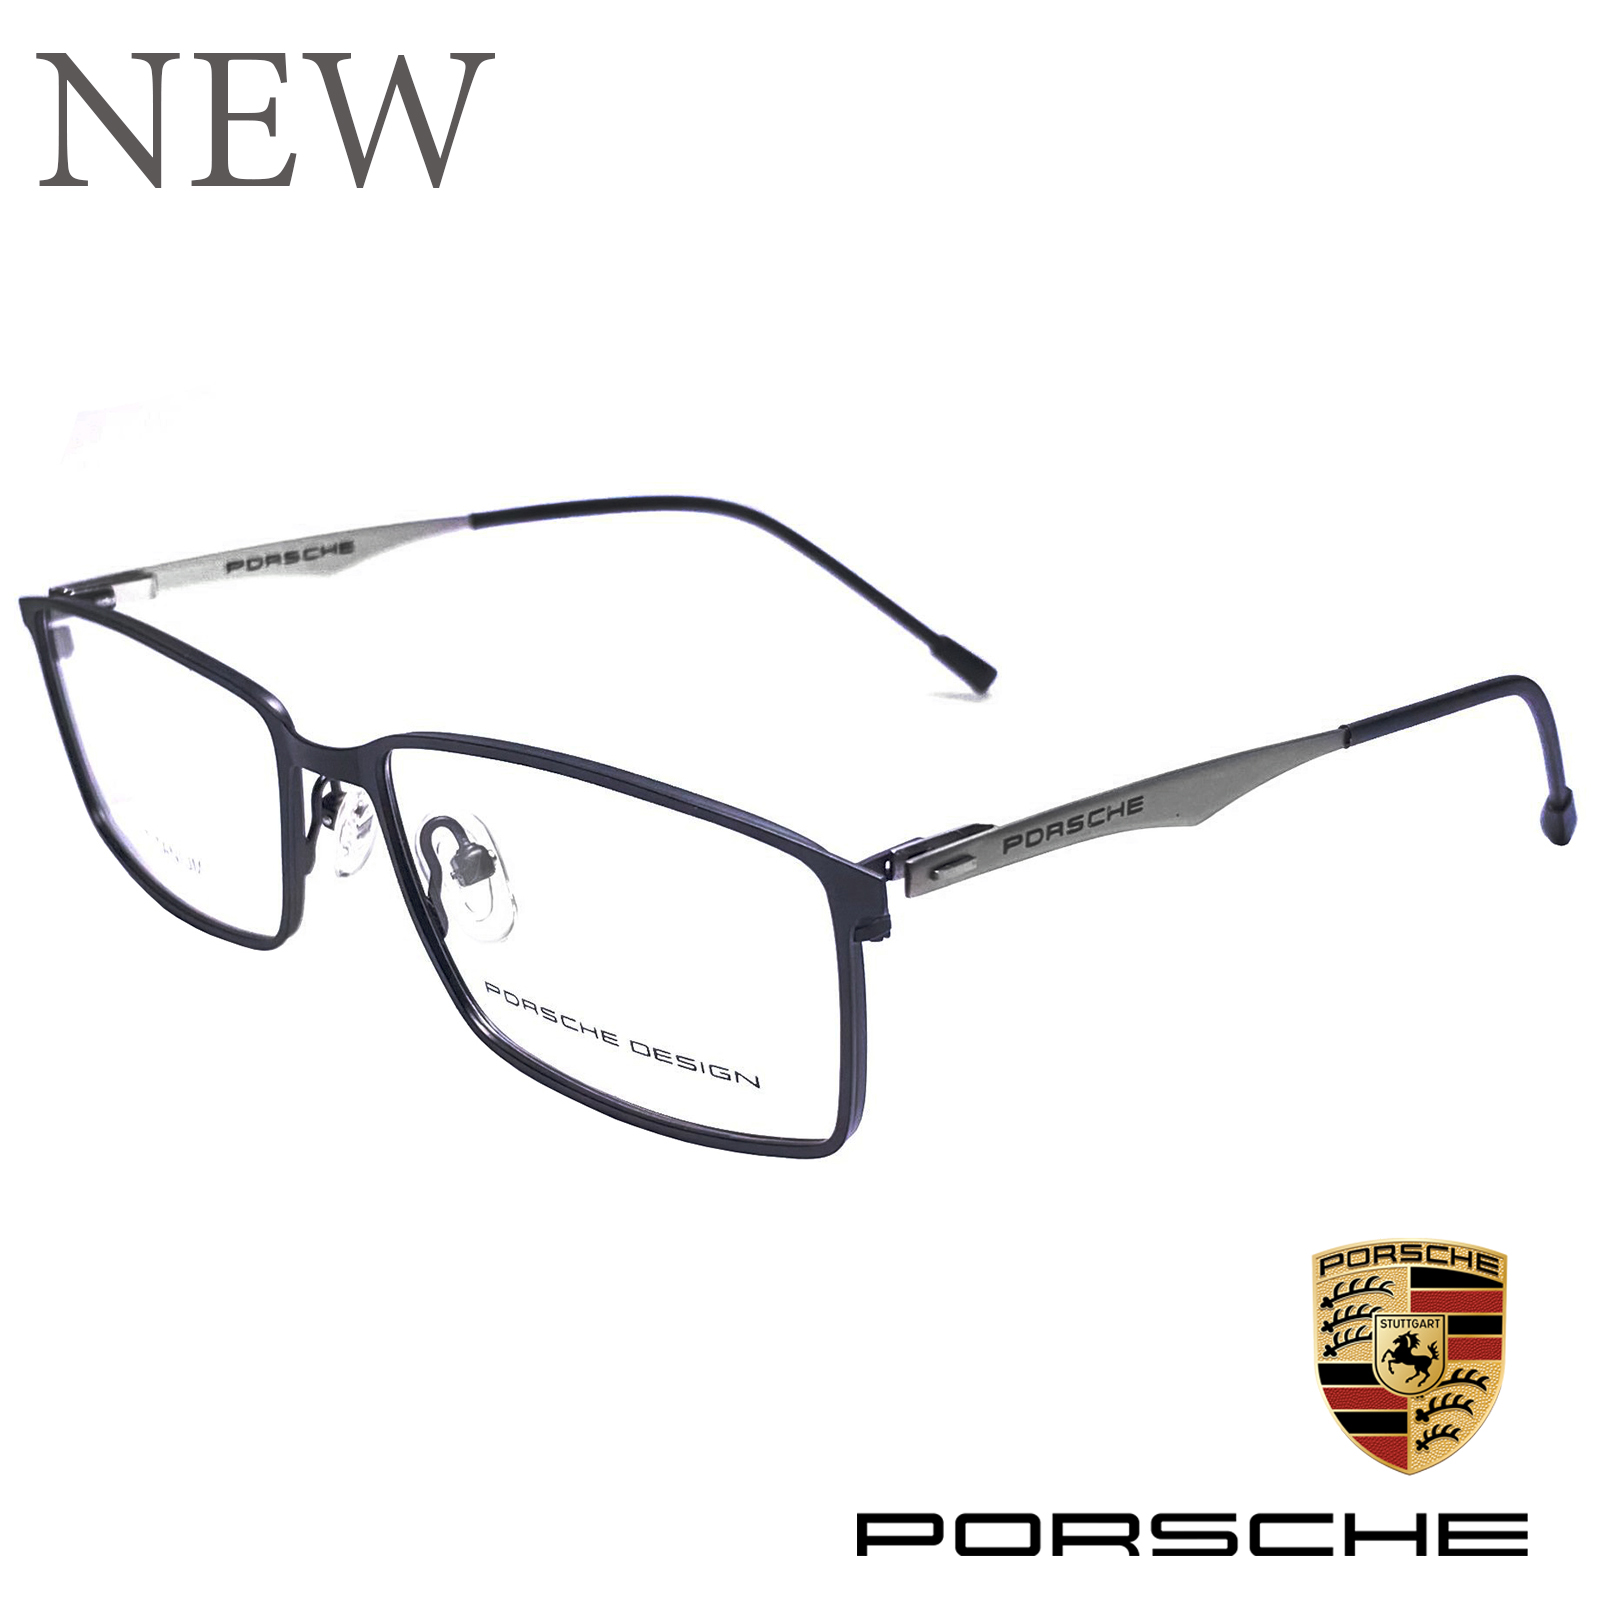 กรอบแว่นตา สำหรับตัดเลนส์ แว่นตา Fashion รุ่น PORSCHE 8822 กรอบเต็ม ทรงเหลี่ยม ขาสปริง วัสดุไทเทเนียมTitanium น้ำหนักเบาทนทาน รับตัดเลนส์ทุกชนิด